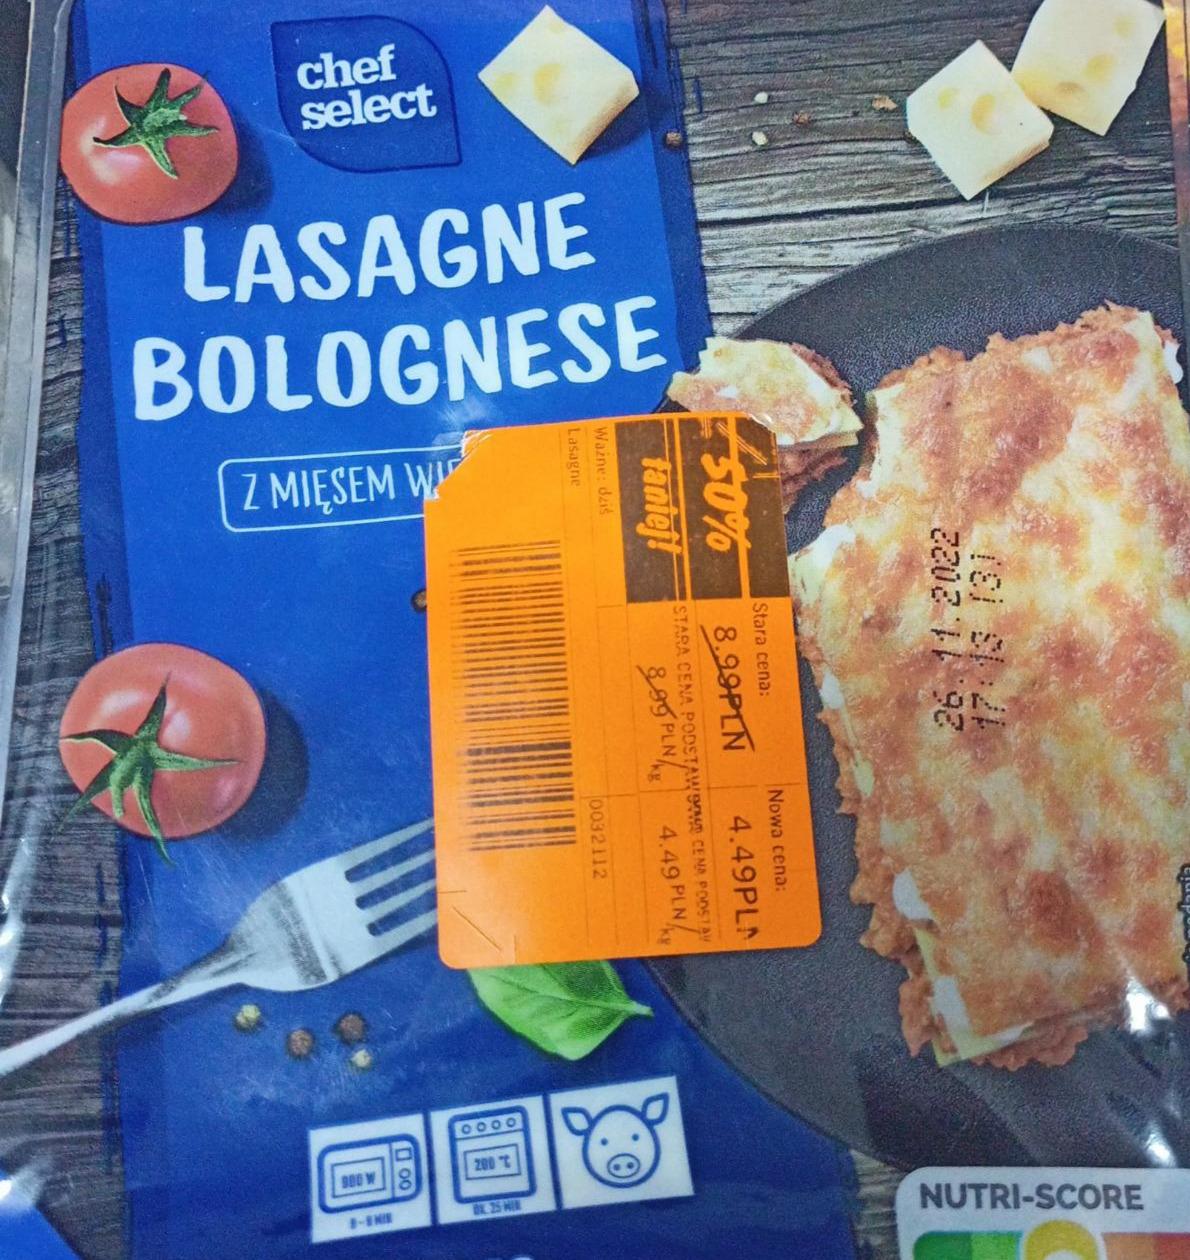 Lasagne bolognese odżywcze Chef mięsem - z wieprzowym wartości Select i kalorie, kJ